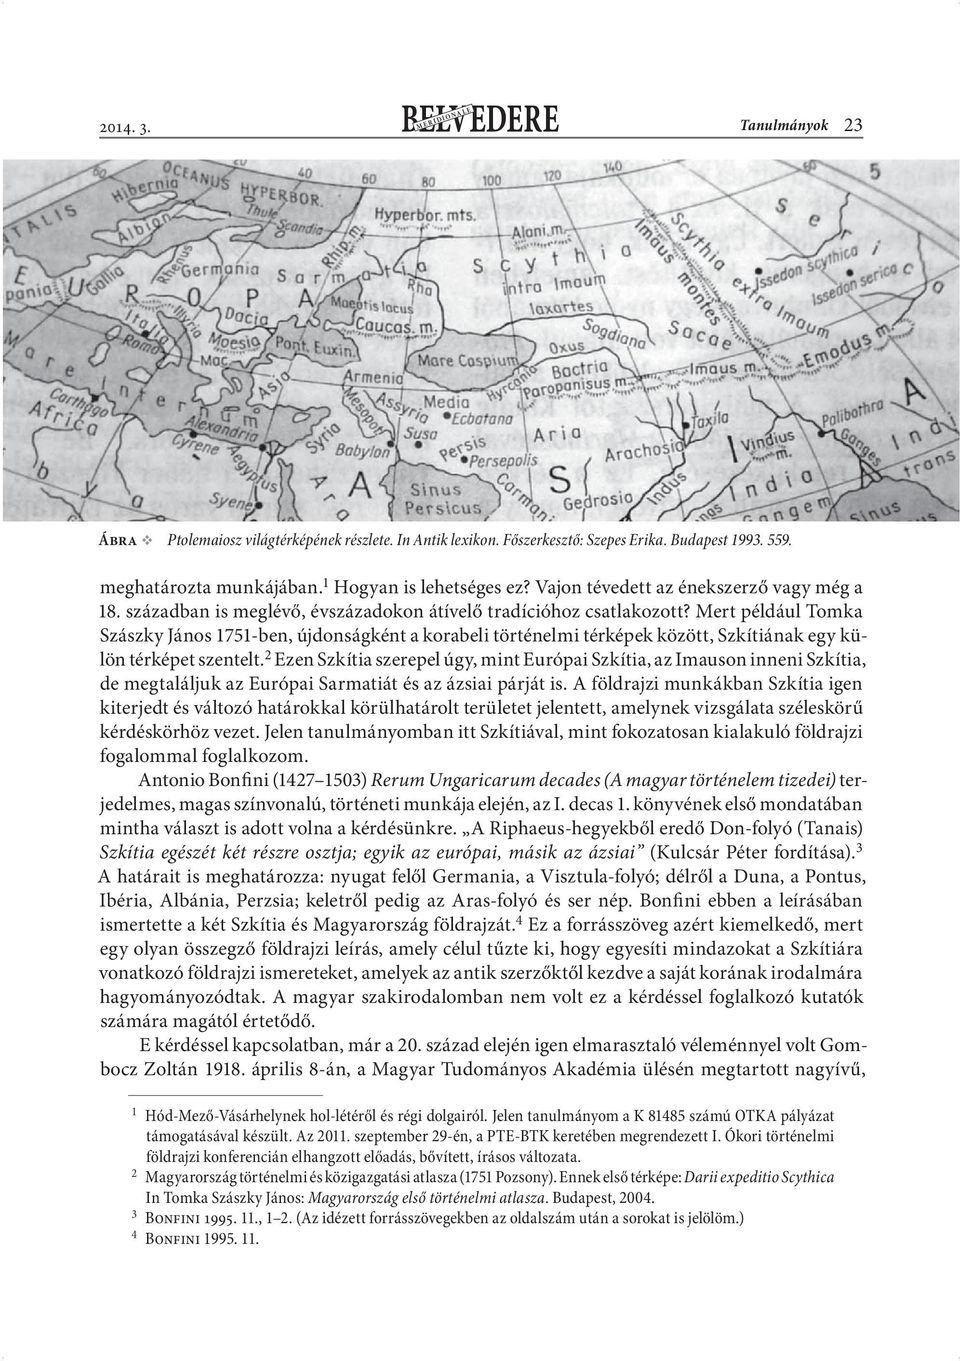 Mert például Tomka Szászky János 1751-ben, újdonságként a korabeli történelmi térképek között, Szkítiának egy külön térképet szentelt.